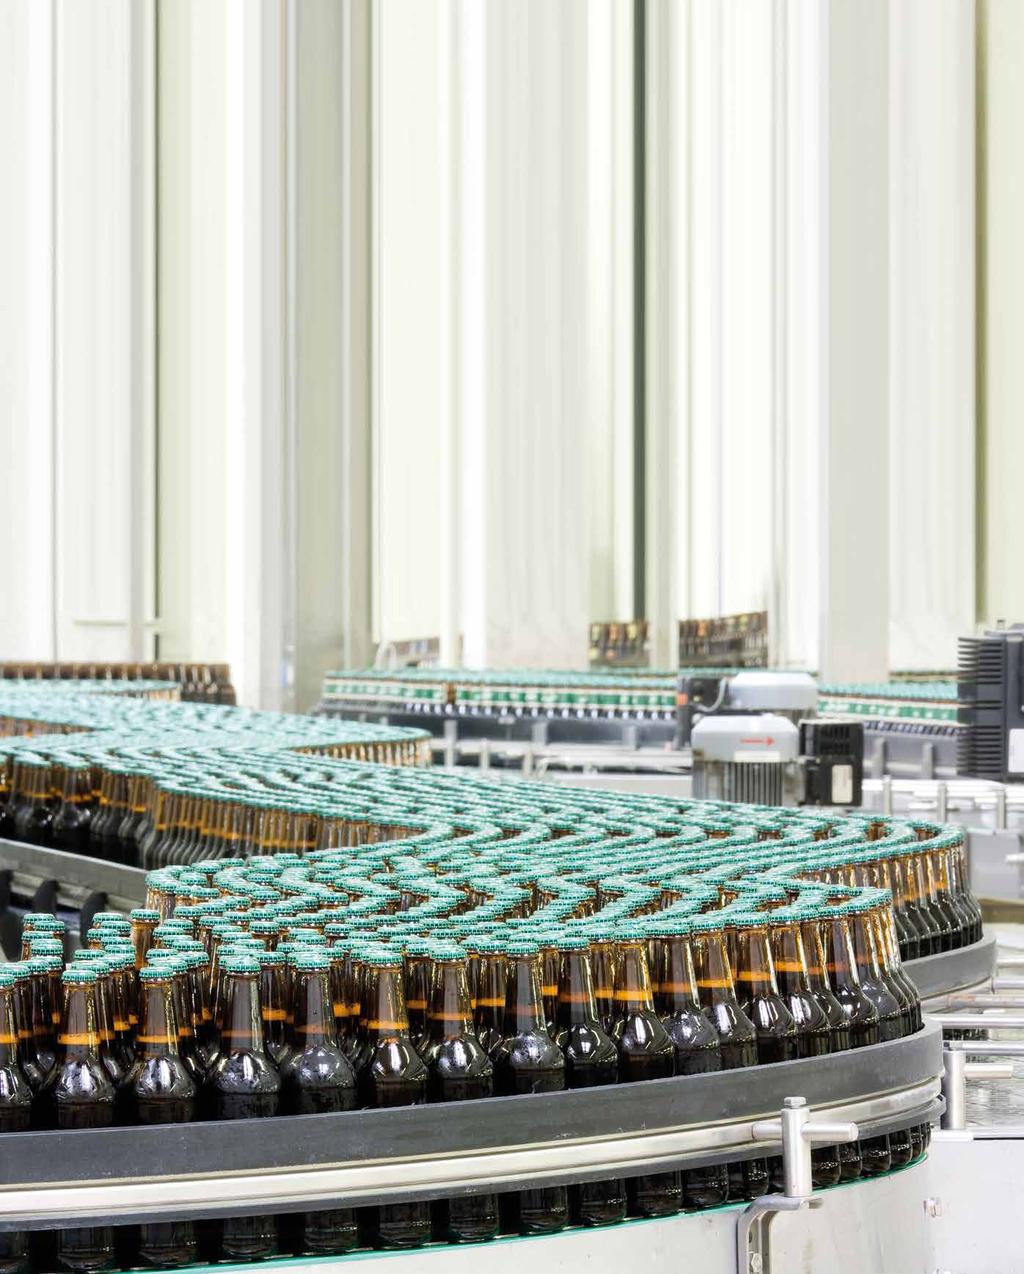 Novo bloco de válvulas Flexline ICF em aço inoxidável para a indústria da cerveja Mantendo o fluxo de produção da cerveja